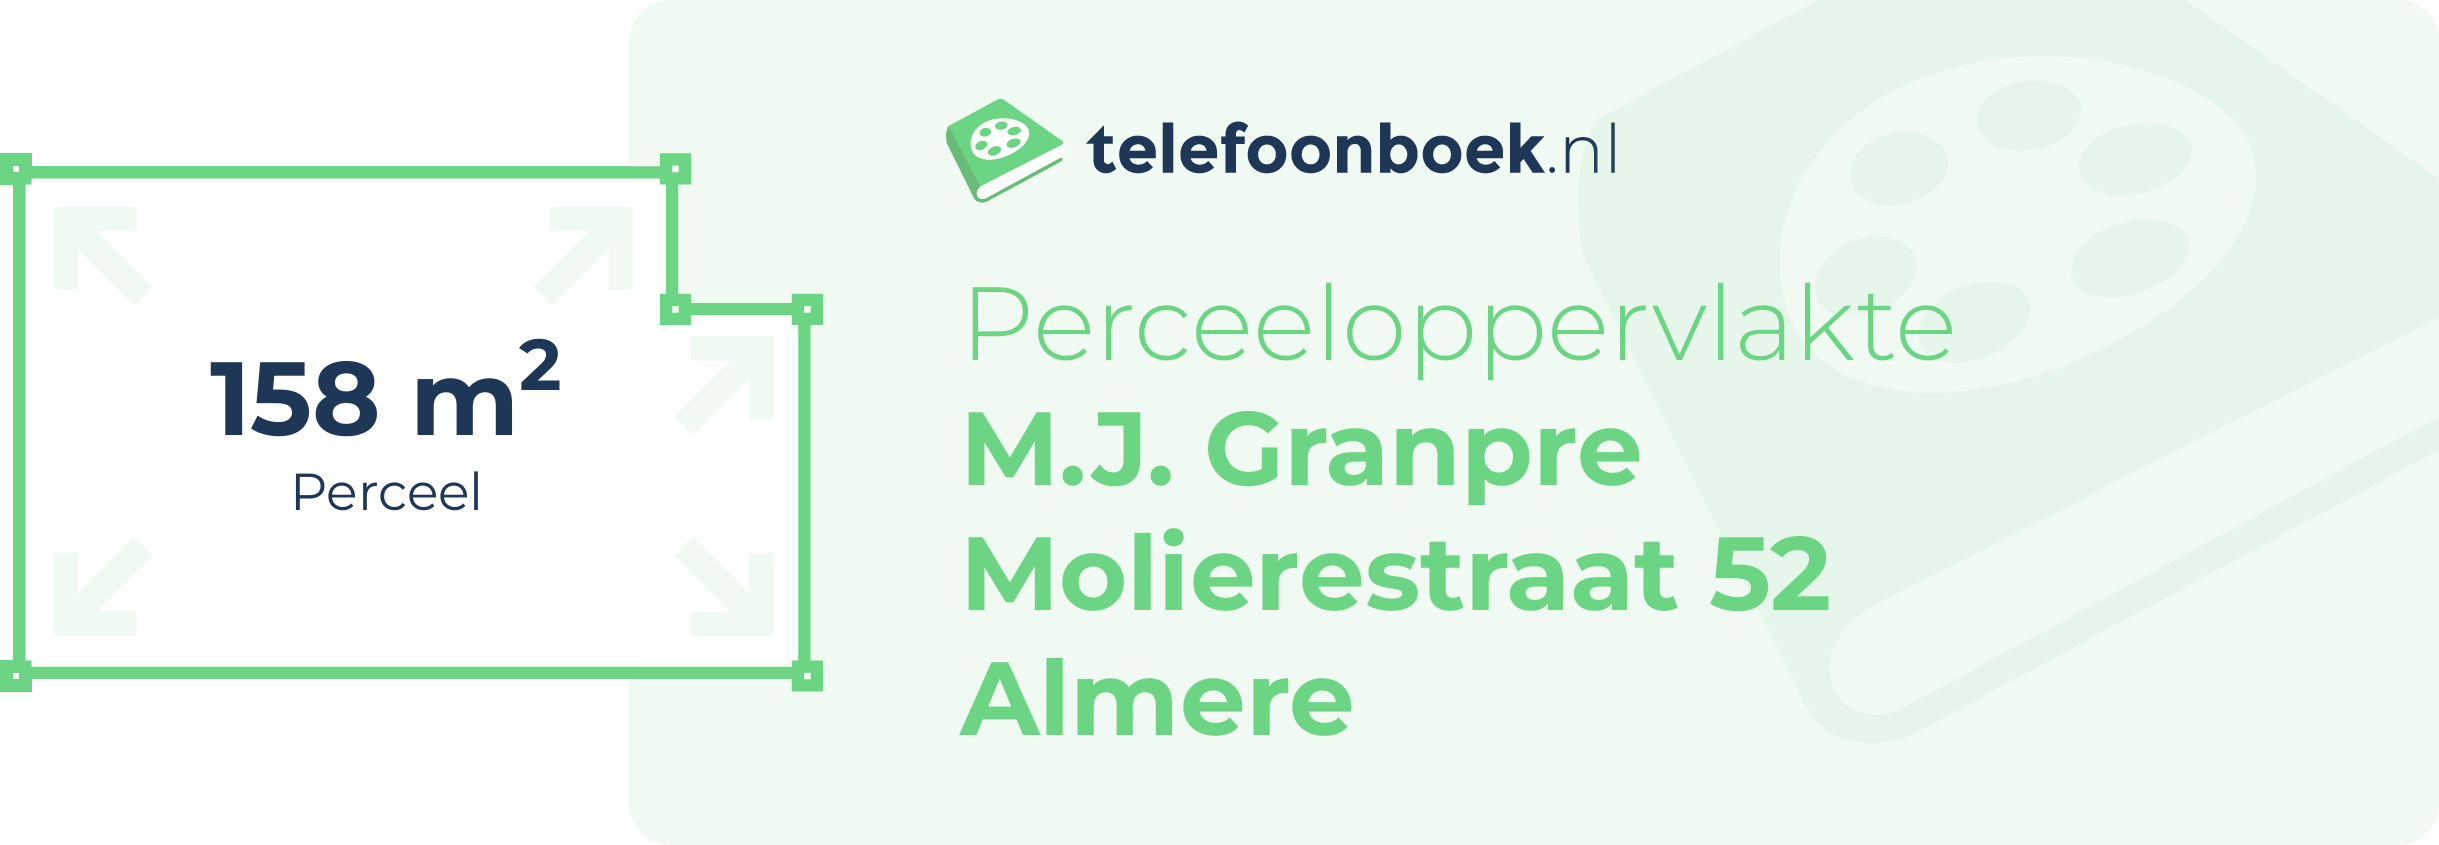 Perceeloppervlakte M.J. Granpre Molierestraat 52 Almere